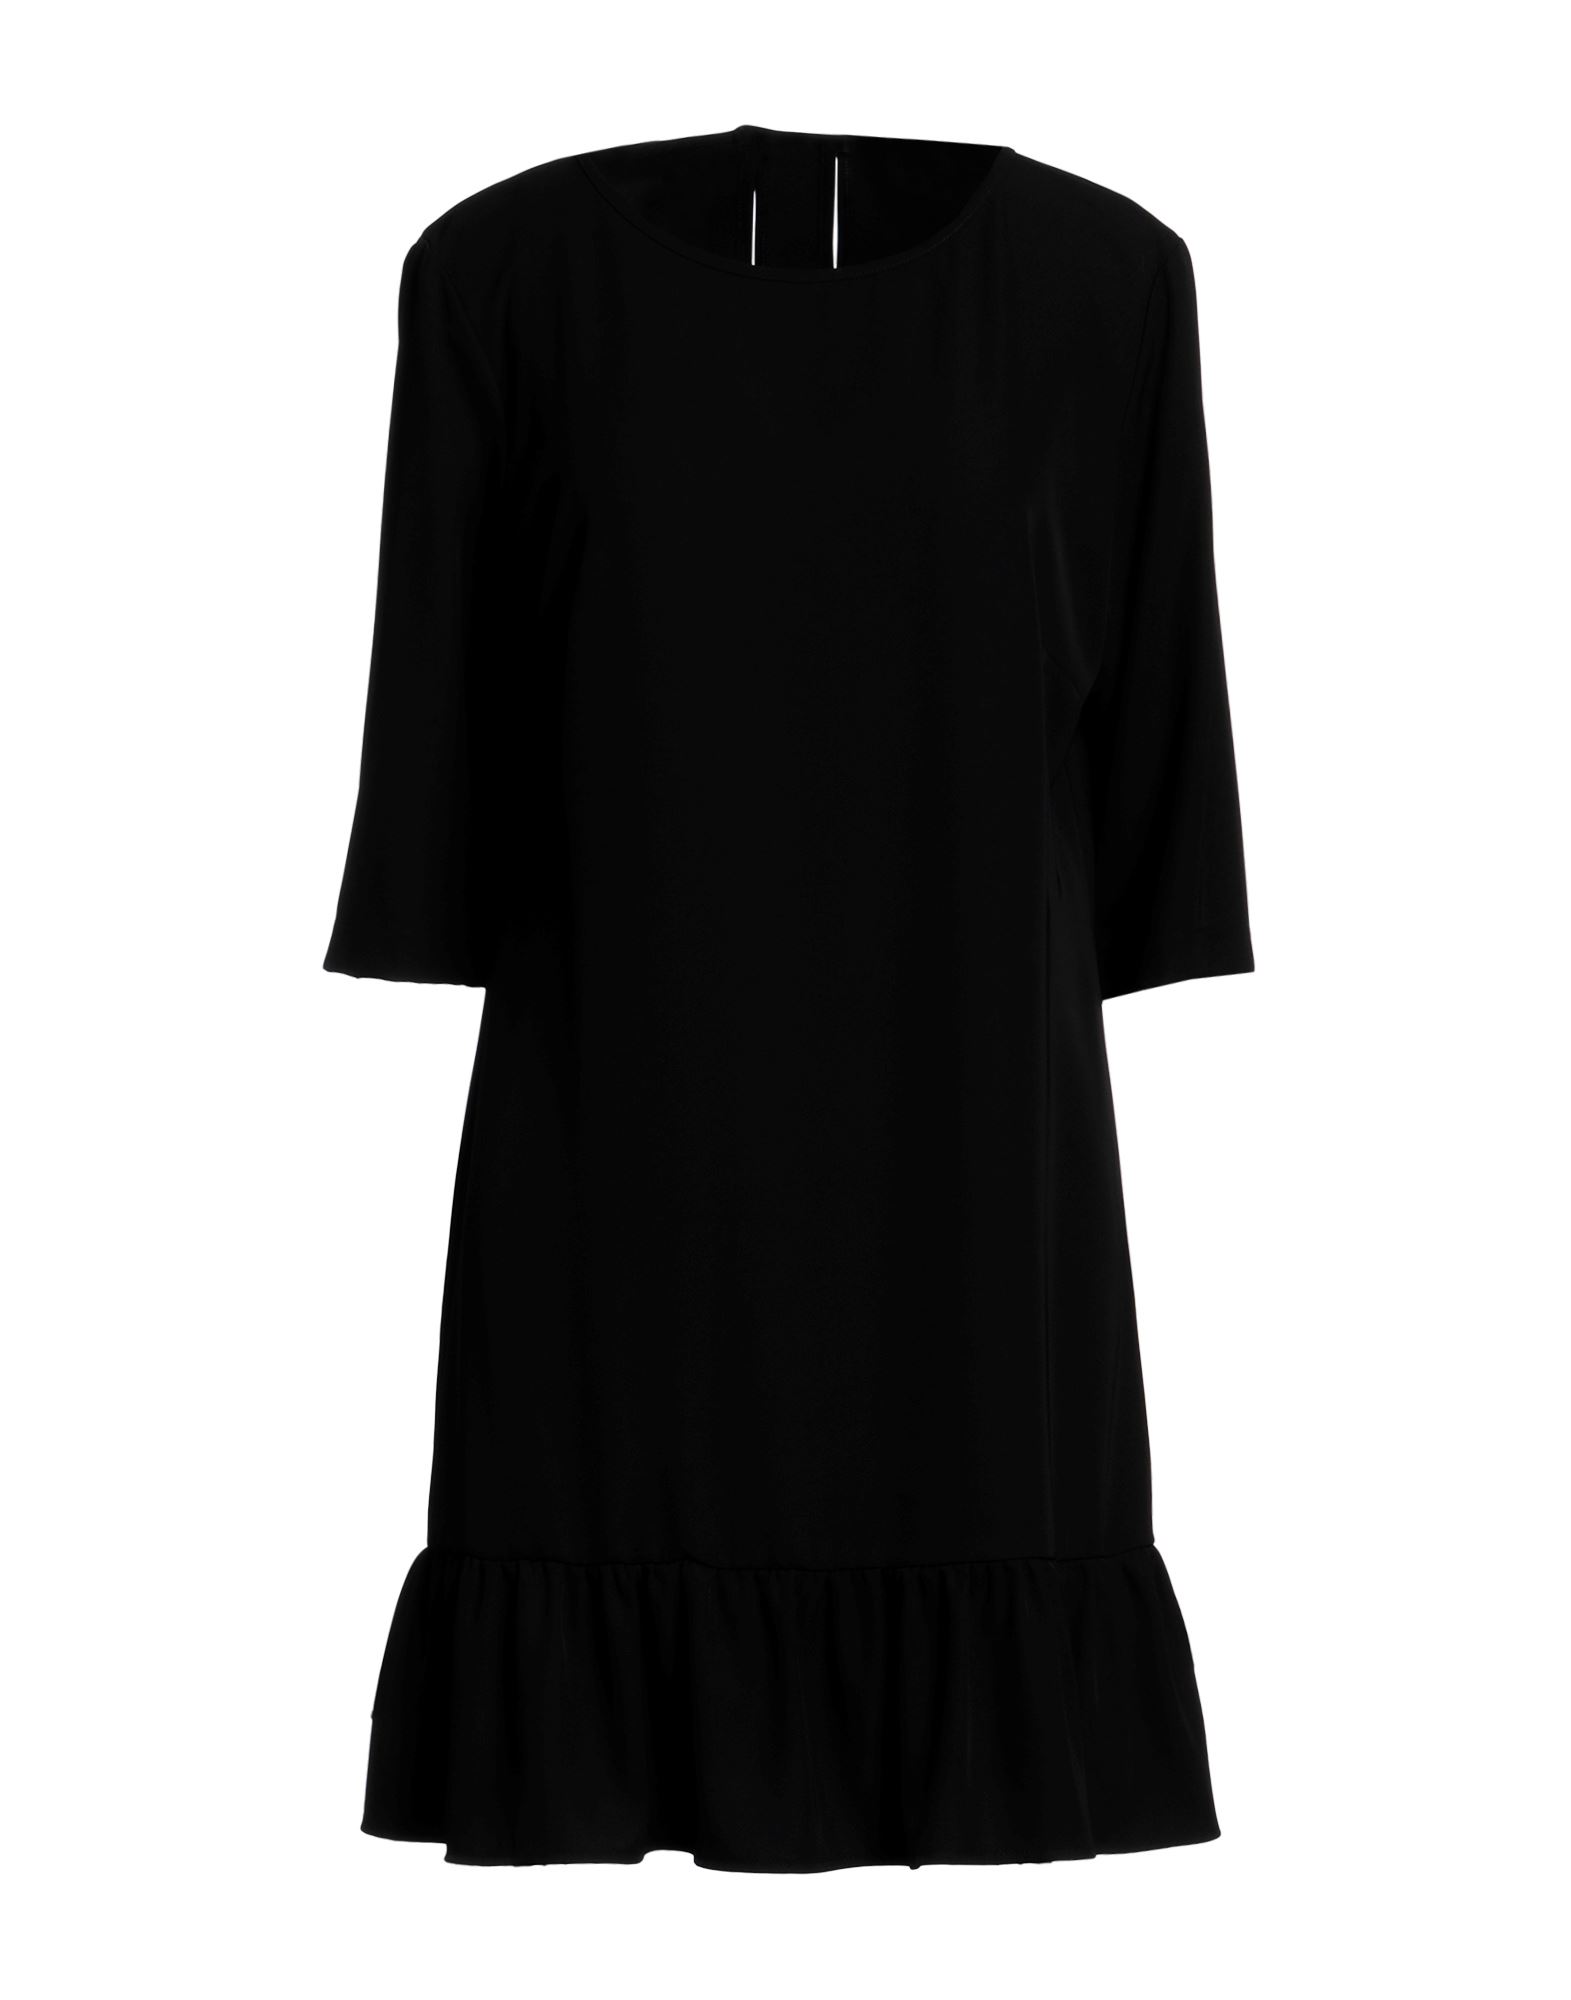 Biancoghiaccio Short Dresses In Black